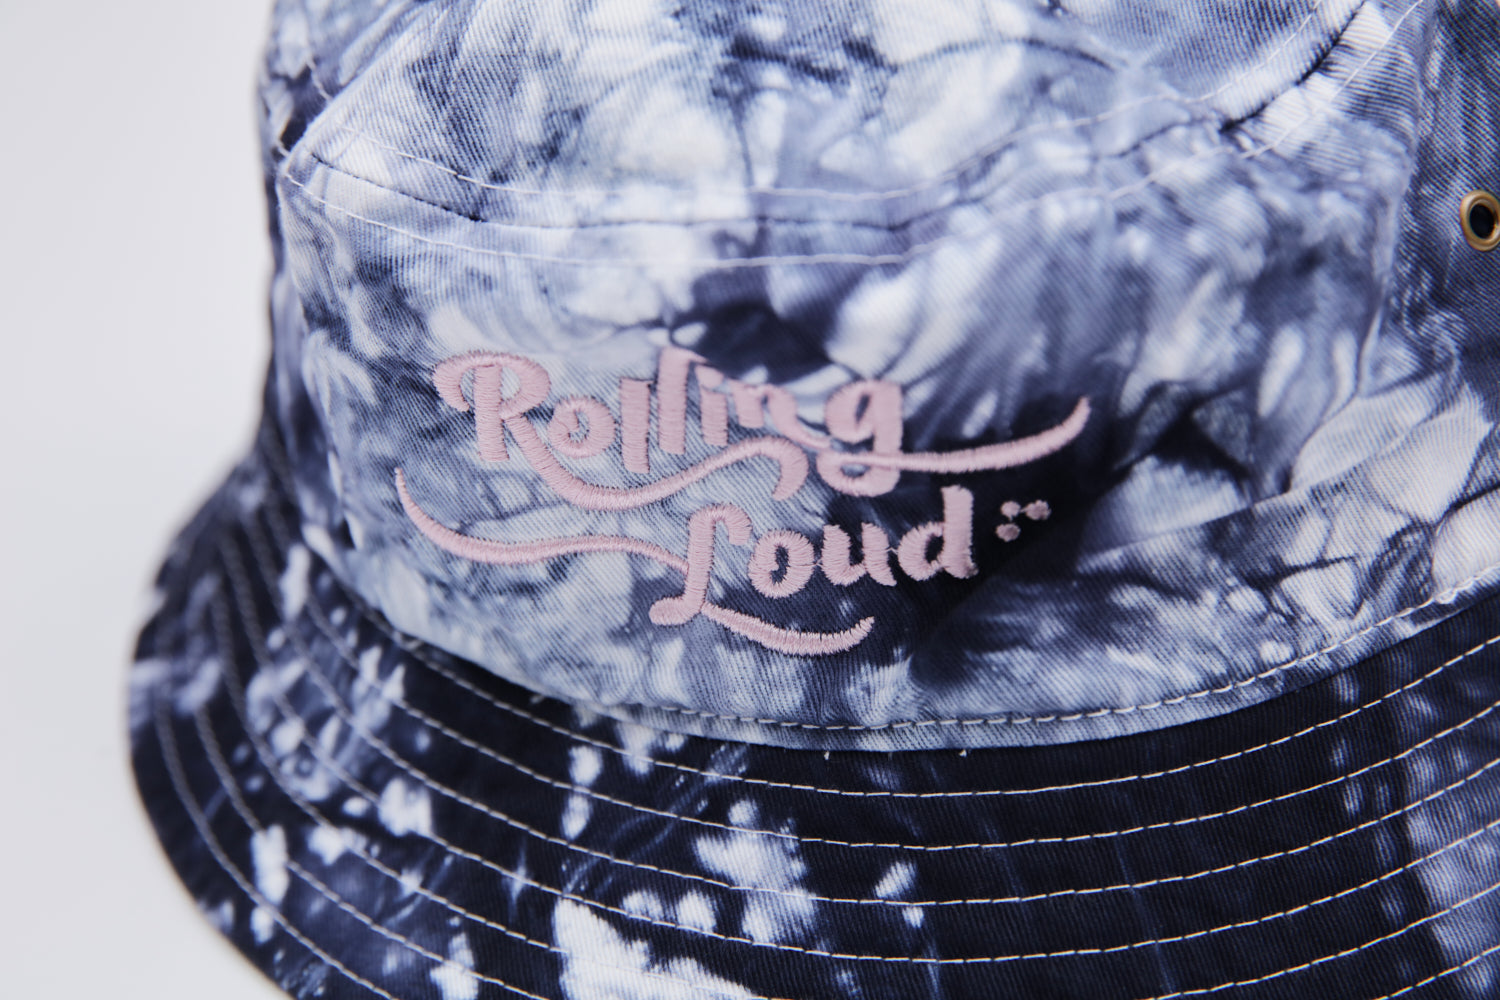 Rolling Loud Tie Dye Bucket Hat Black